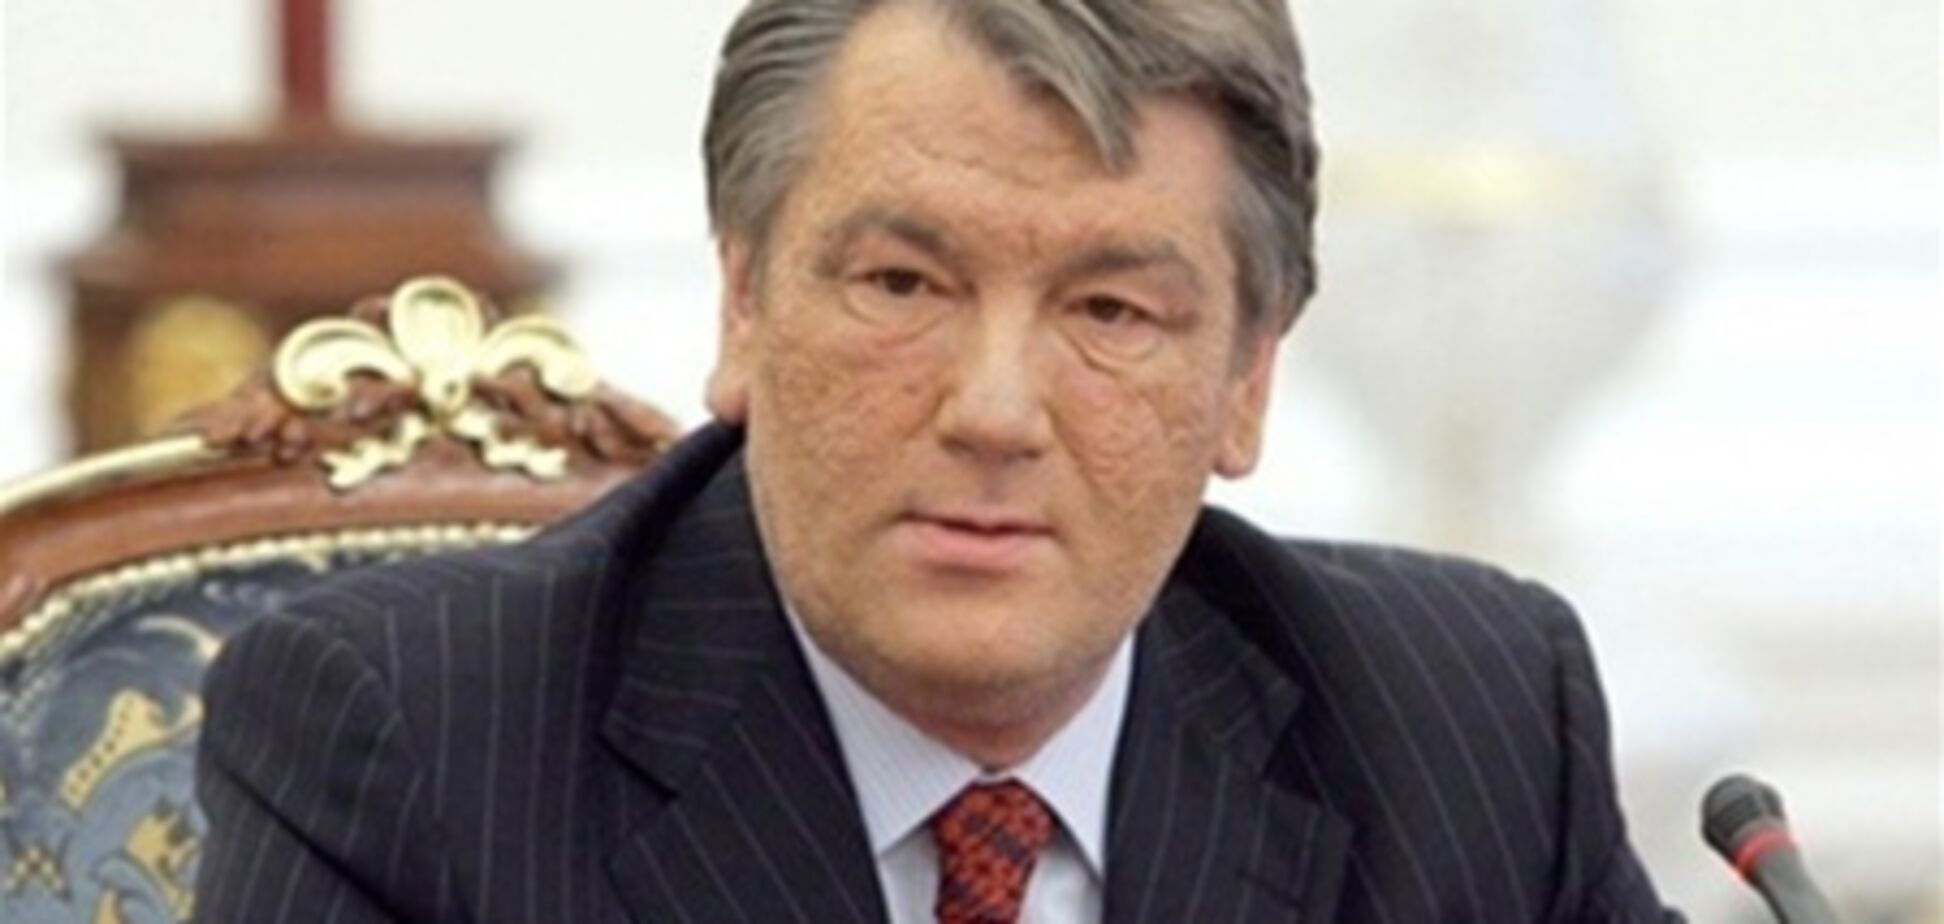 Ющенко чекає покарання - екс-глава політради 'Нашої України'